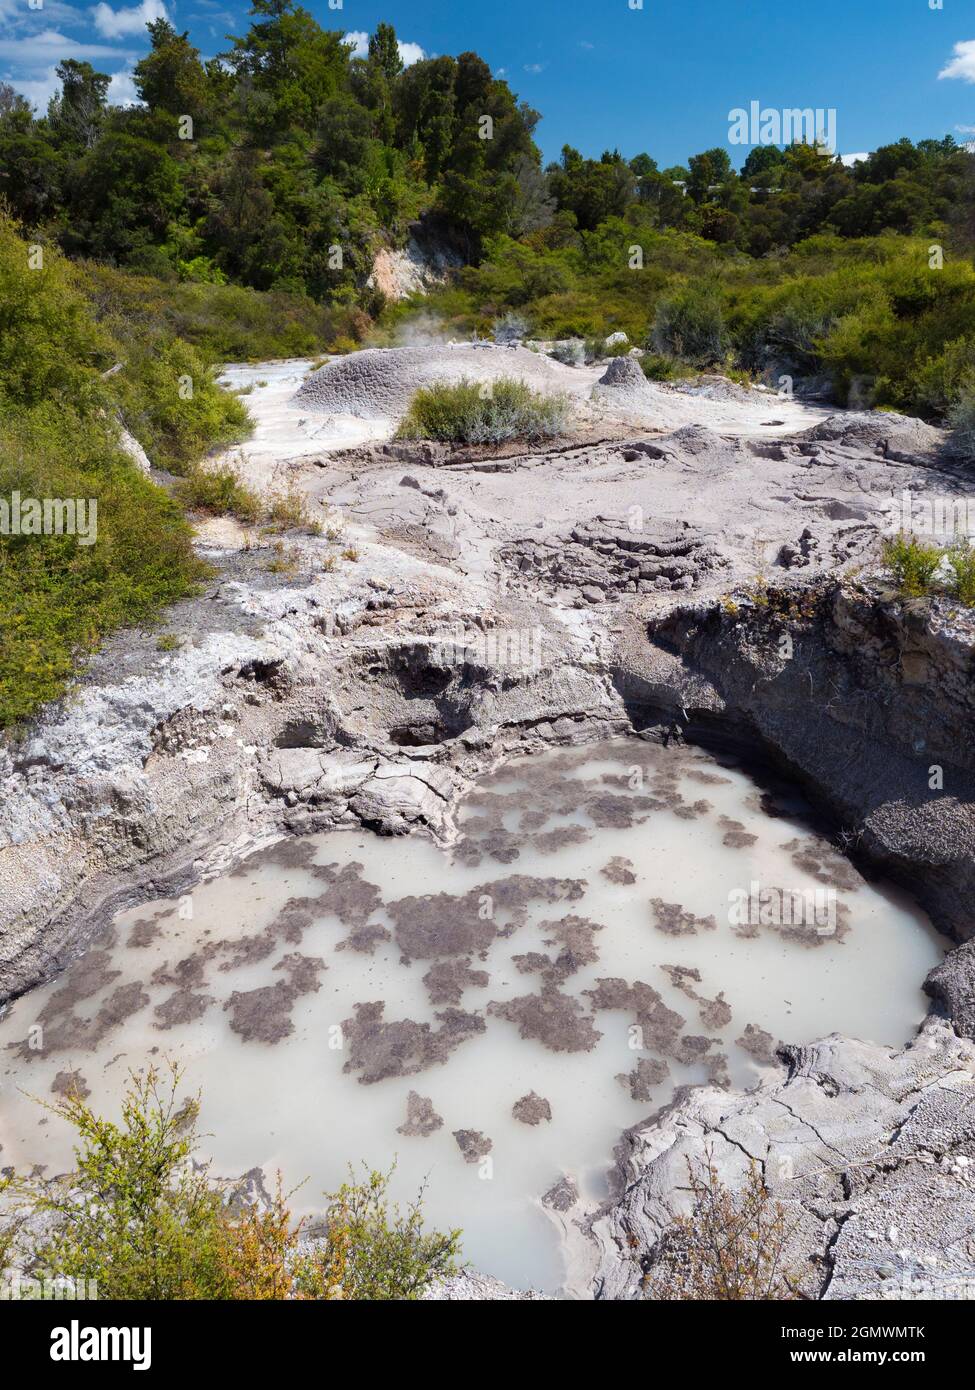 Rotorua, Nuova Zelanda - 1 marzo 2019; Rotorua, nell'Isola del Nord della Nuova Zelanda, è un'area estesa ricca di sfiati geotermici, sorgenti di fango bollente, su Foto Stock